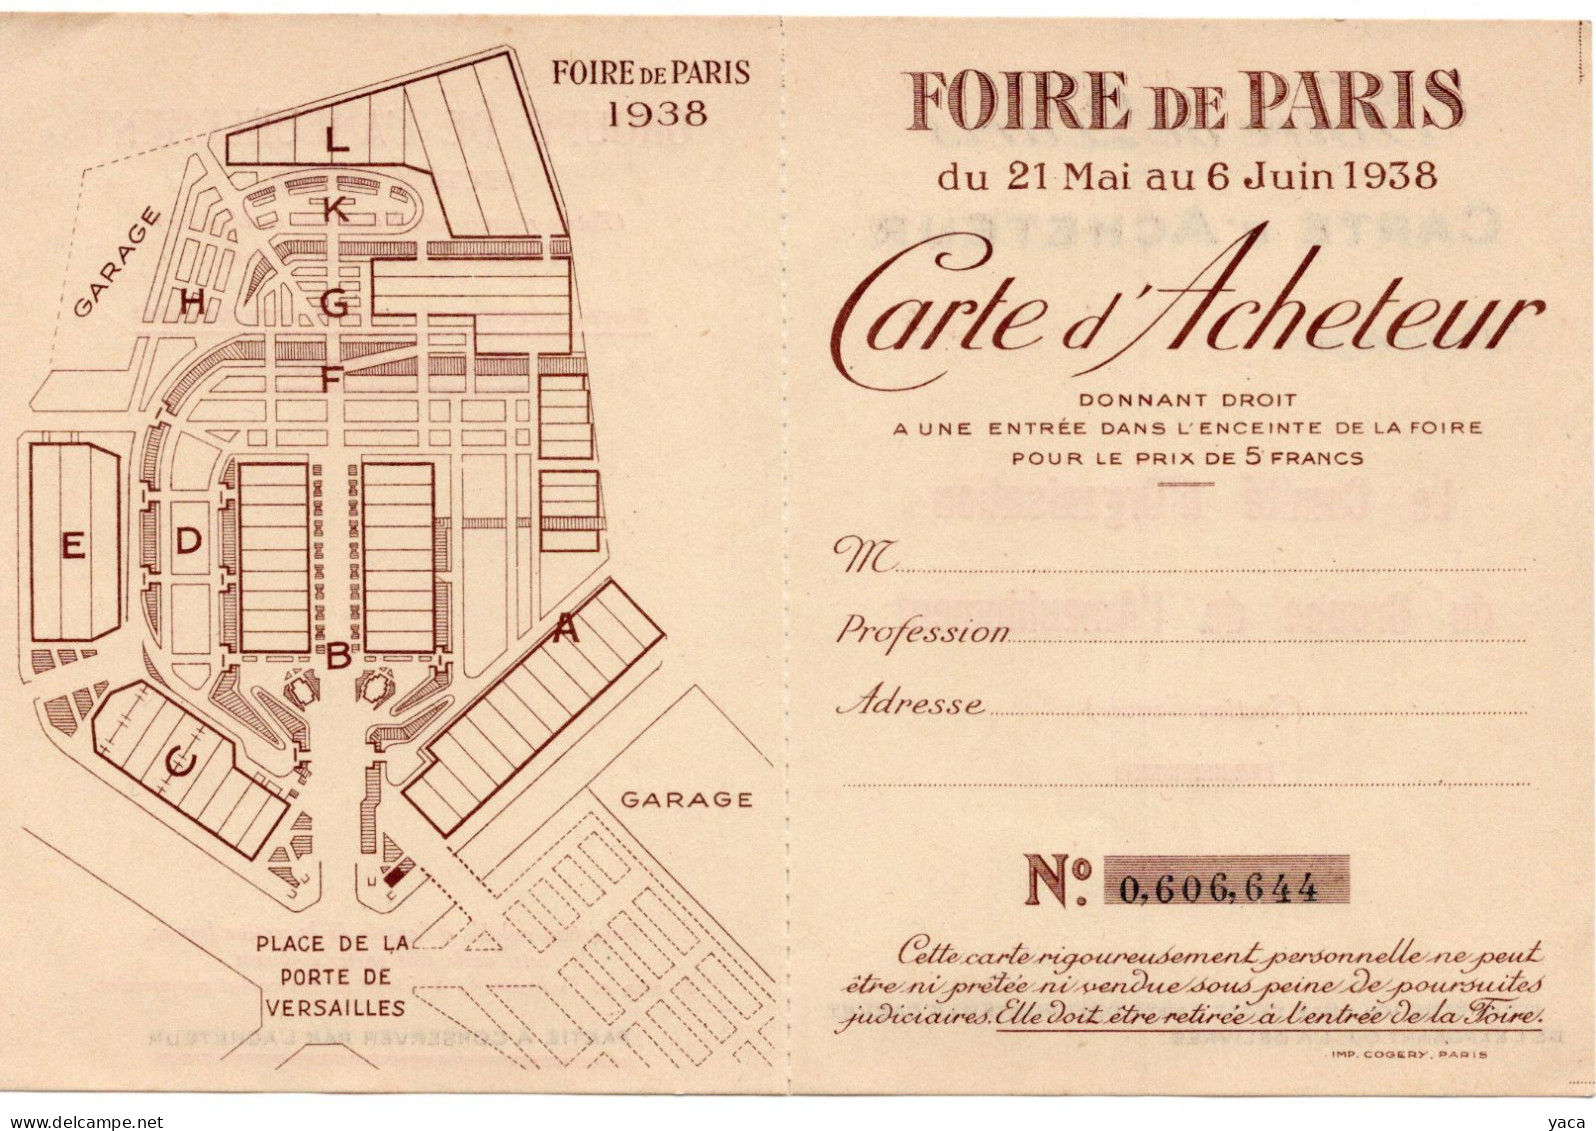 Foire De Paris 1938 - Carte Acheteur - Eintrittskarten